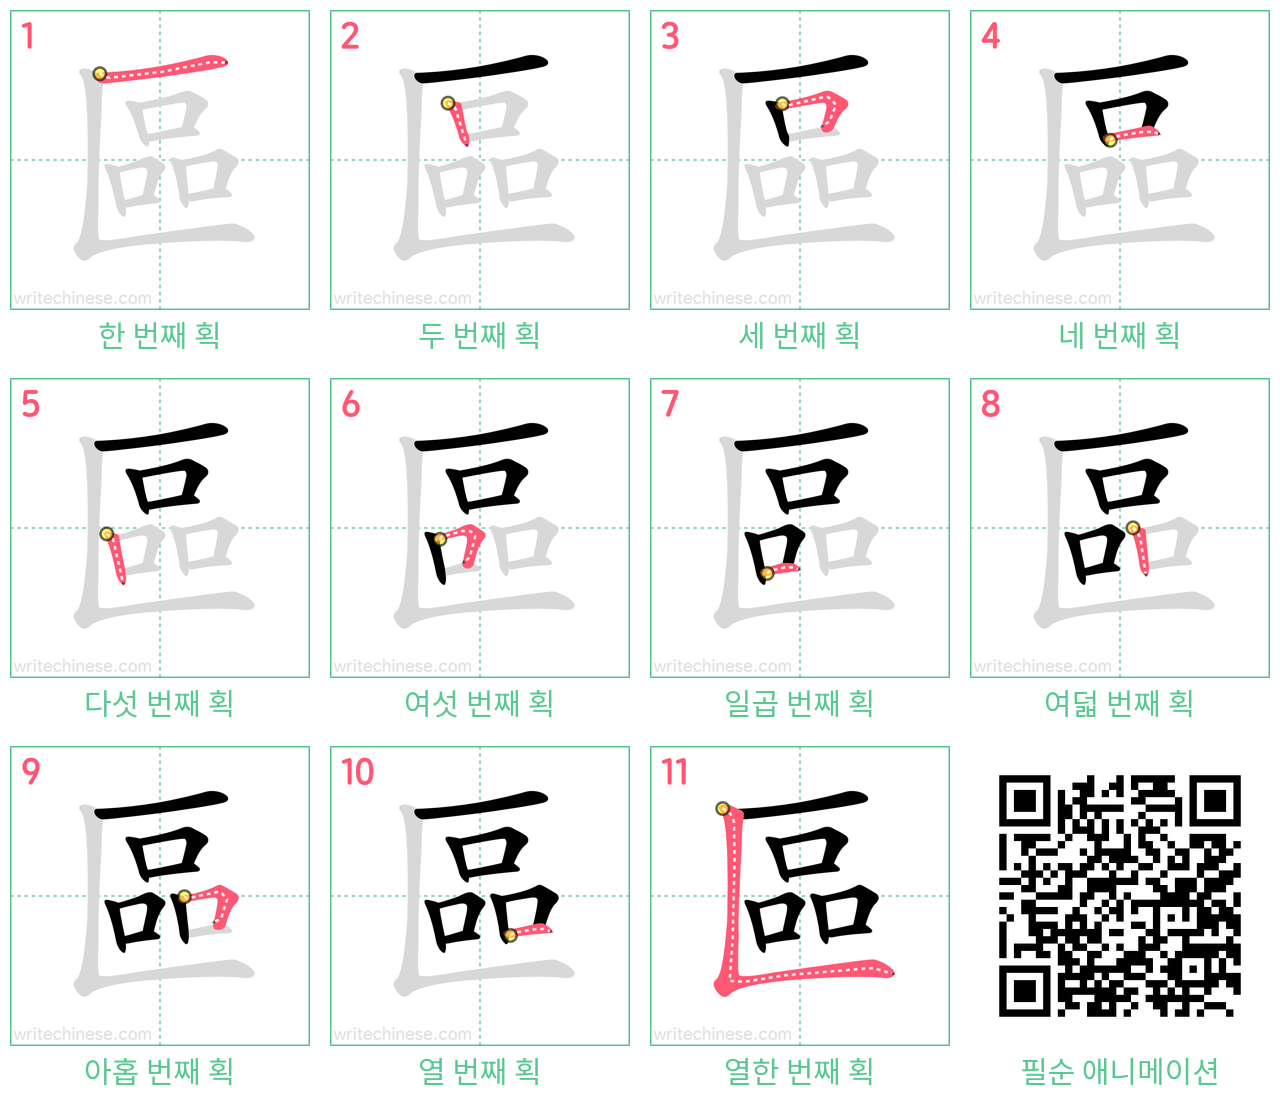 區 step-by-step stroke order diagrams